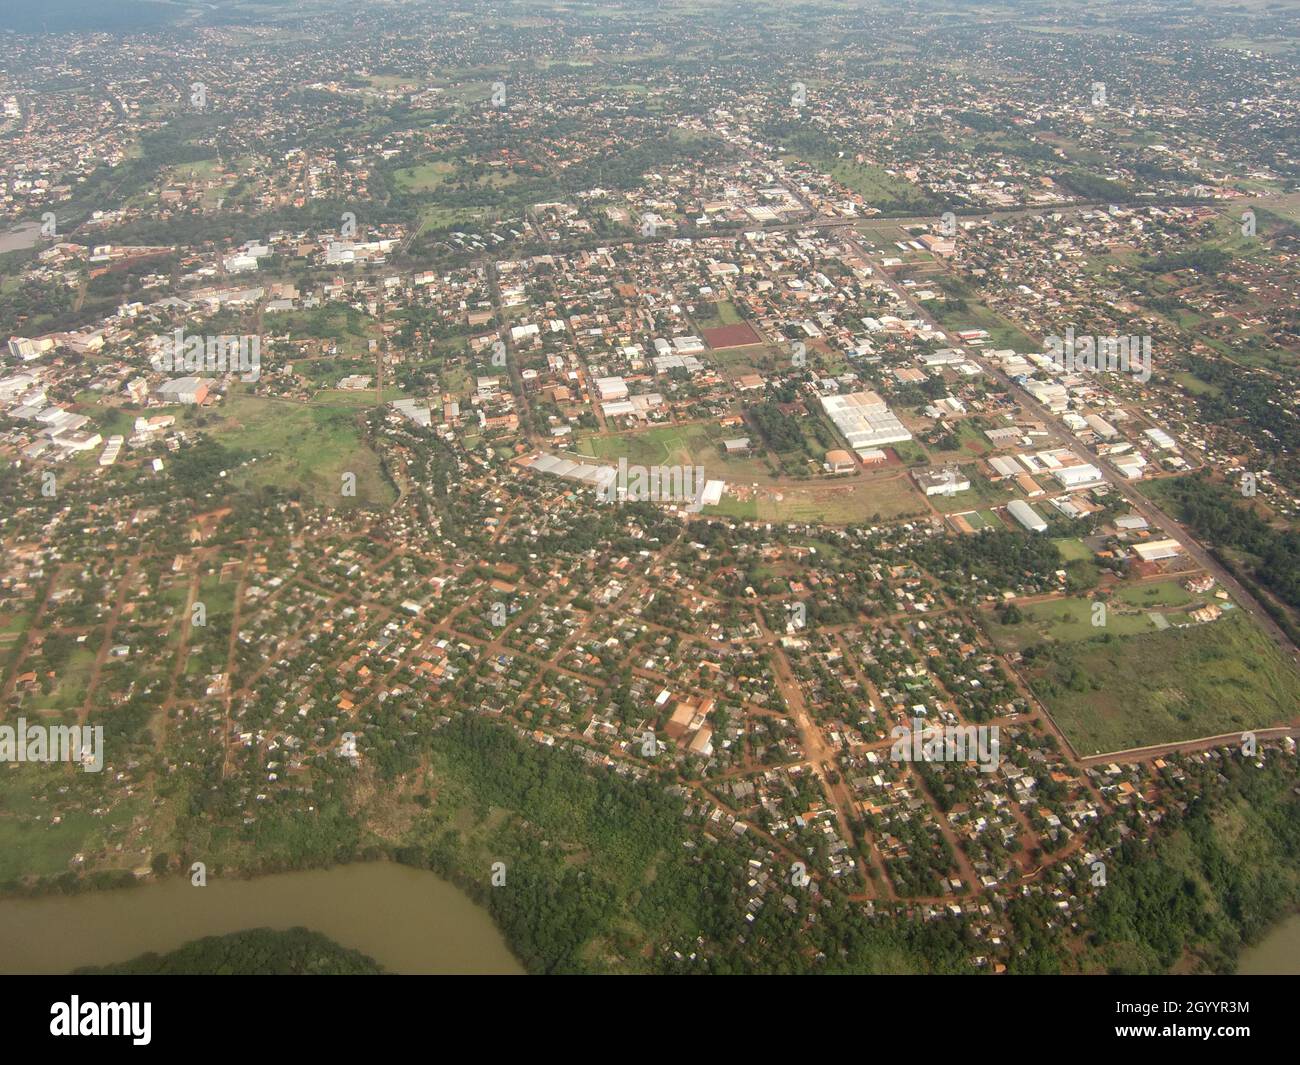 Mit dem Flugzeug von Rio de Janeiro nach Foz do Iguaçu - Luftaufnahme von Brasilien Stockfoto